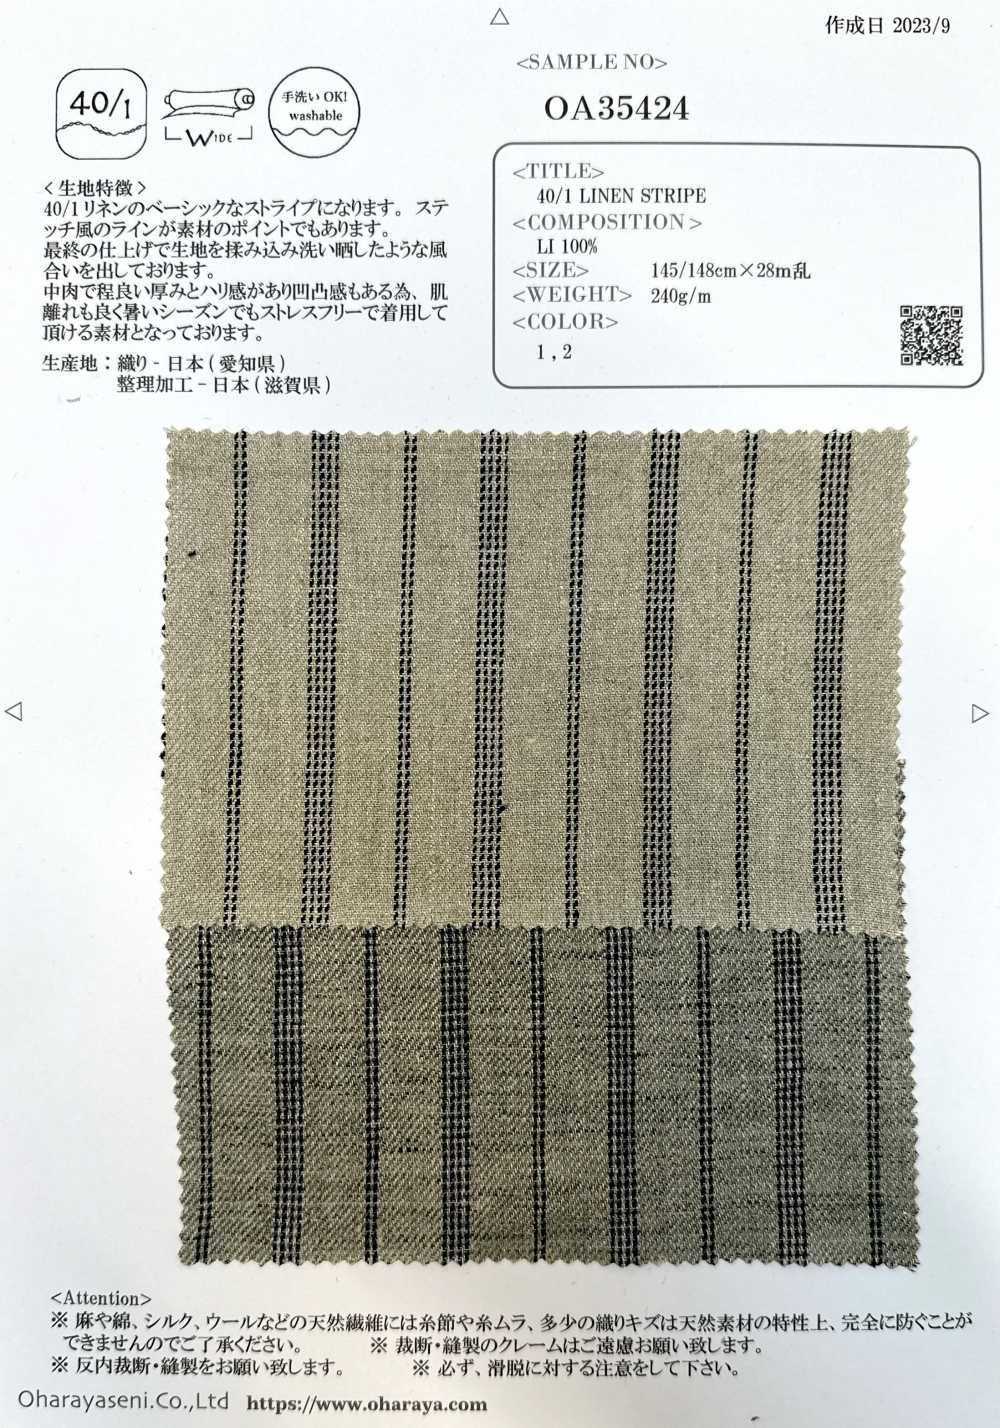 OA35424 RAYURE LIN 40/1[Fabrication De Textile] Oharayaseni